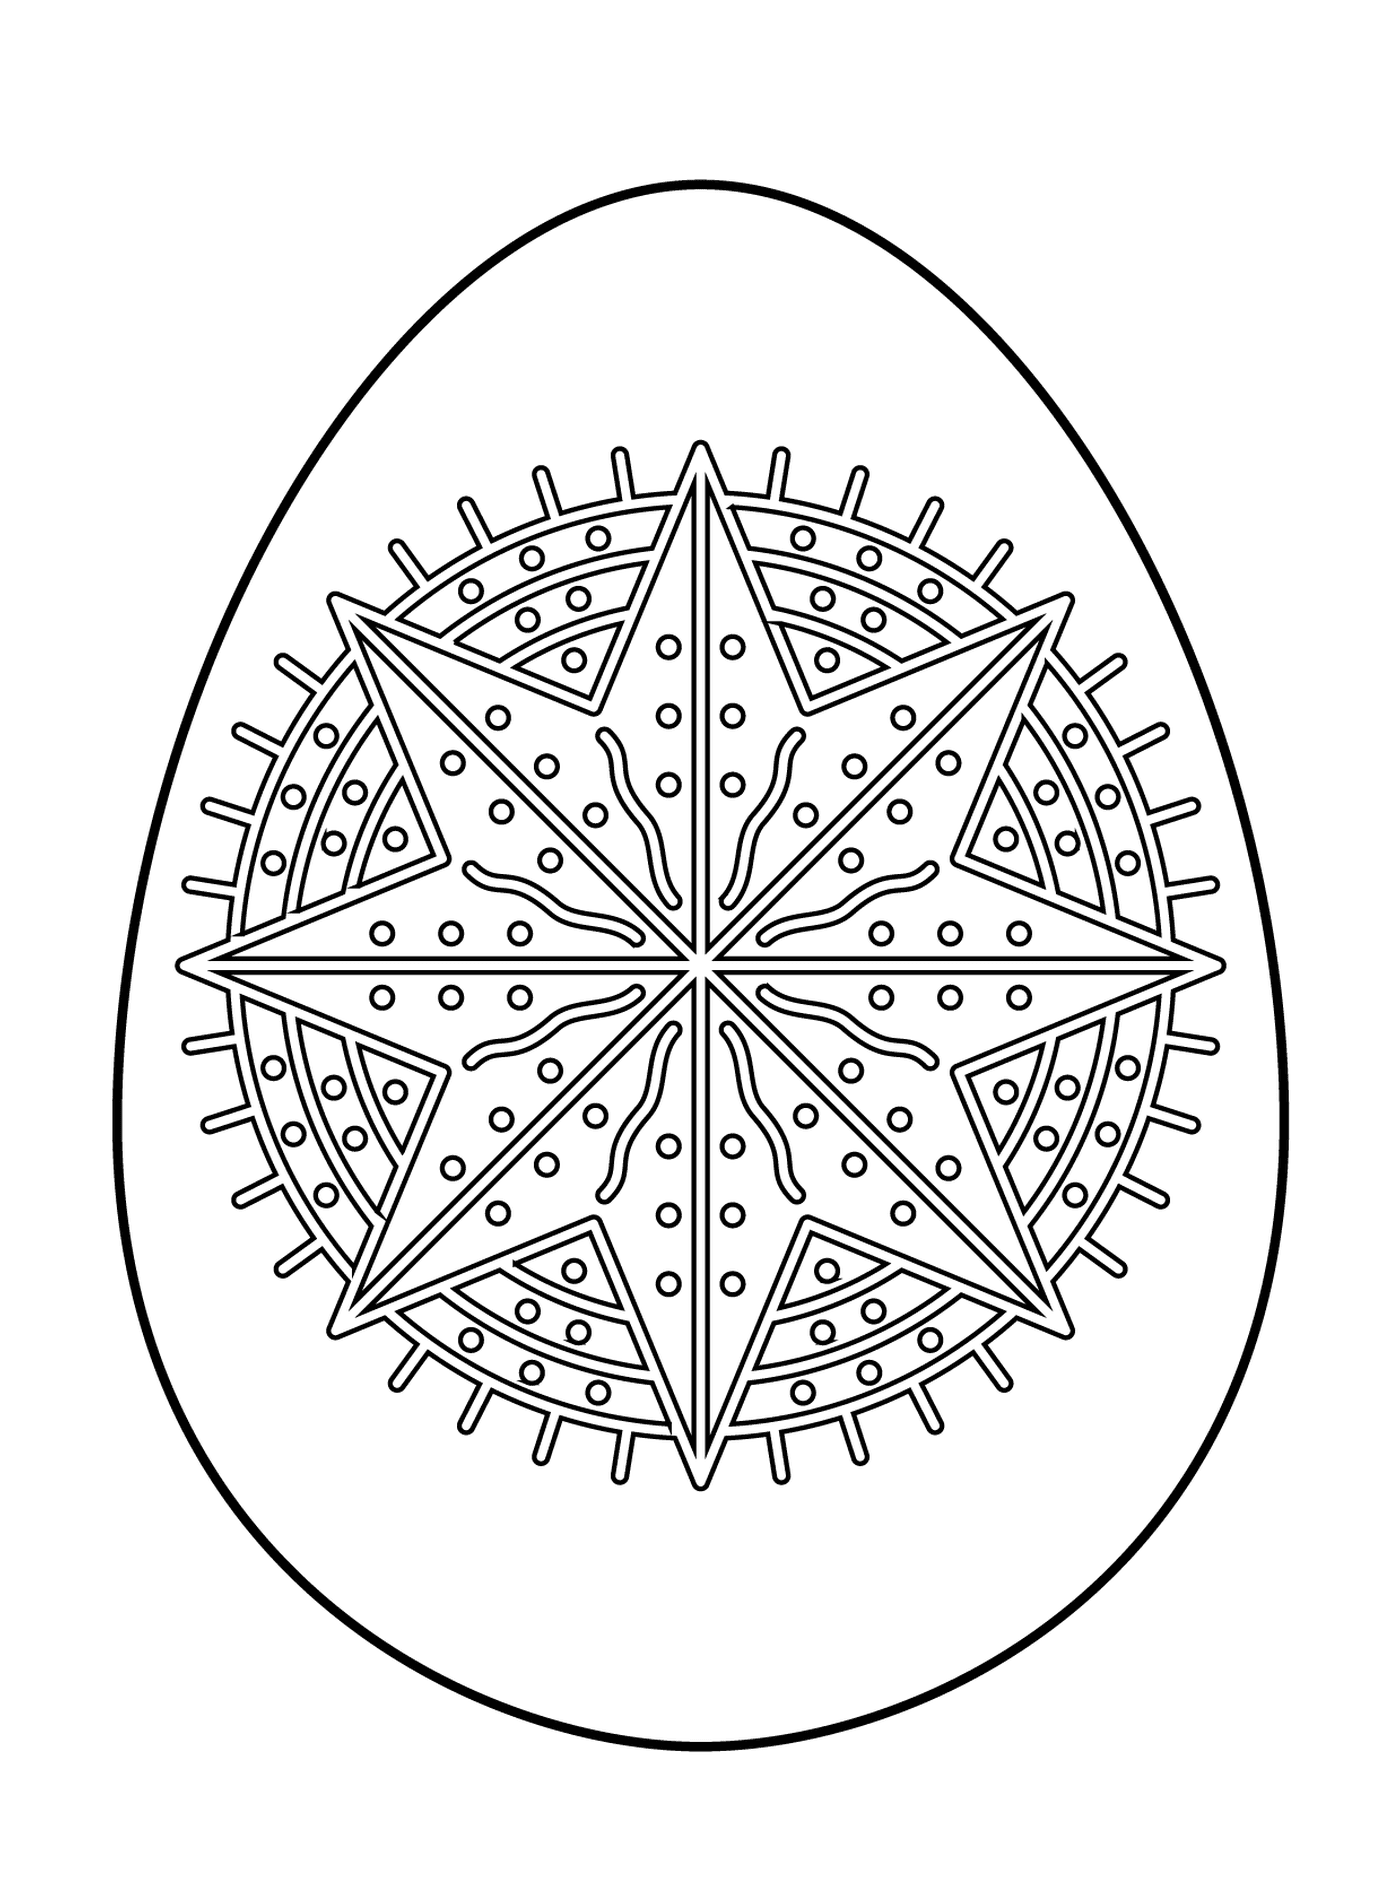   Oeuf de Pâques avec motif étoile octagramme 